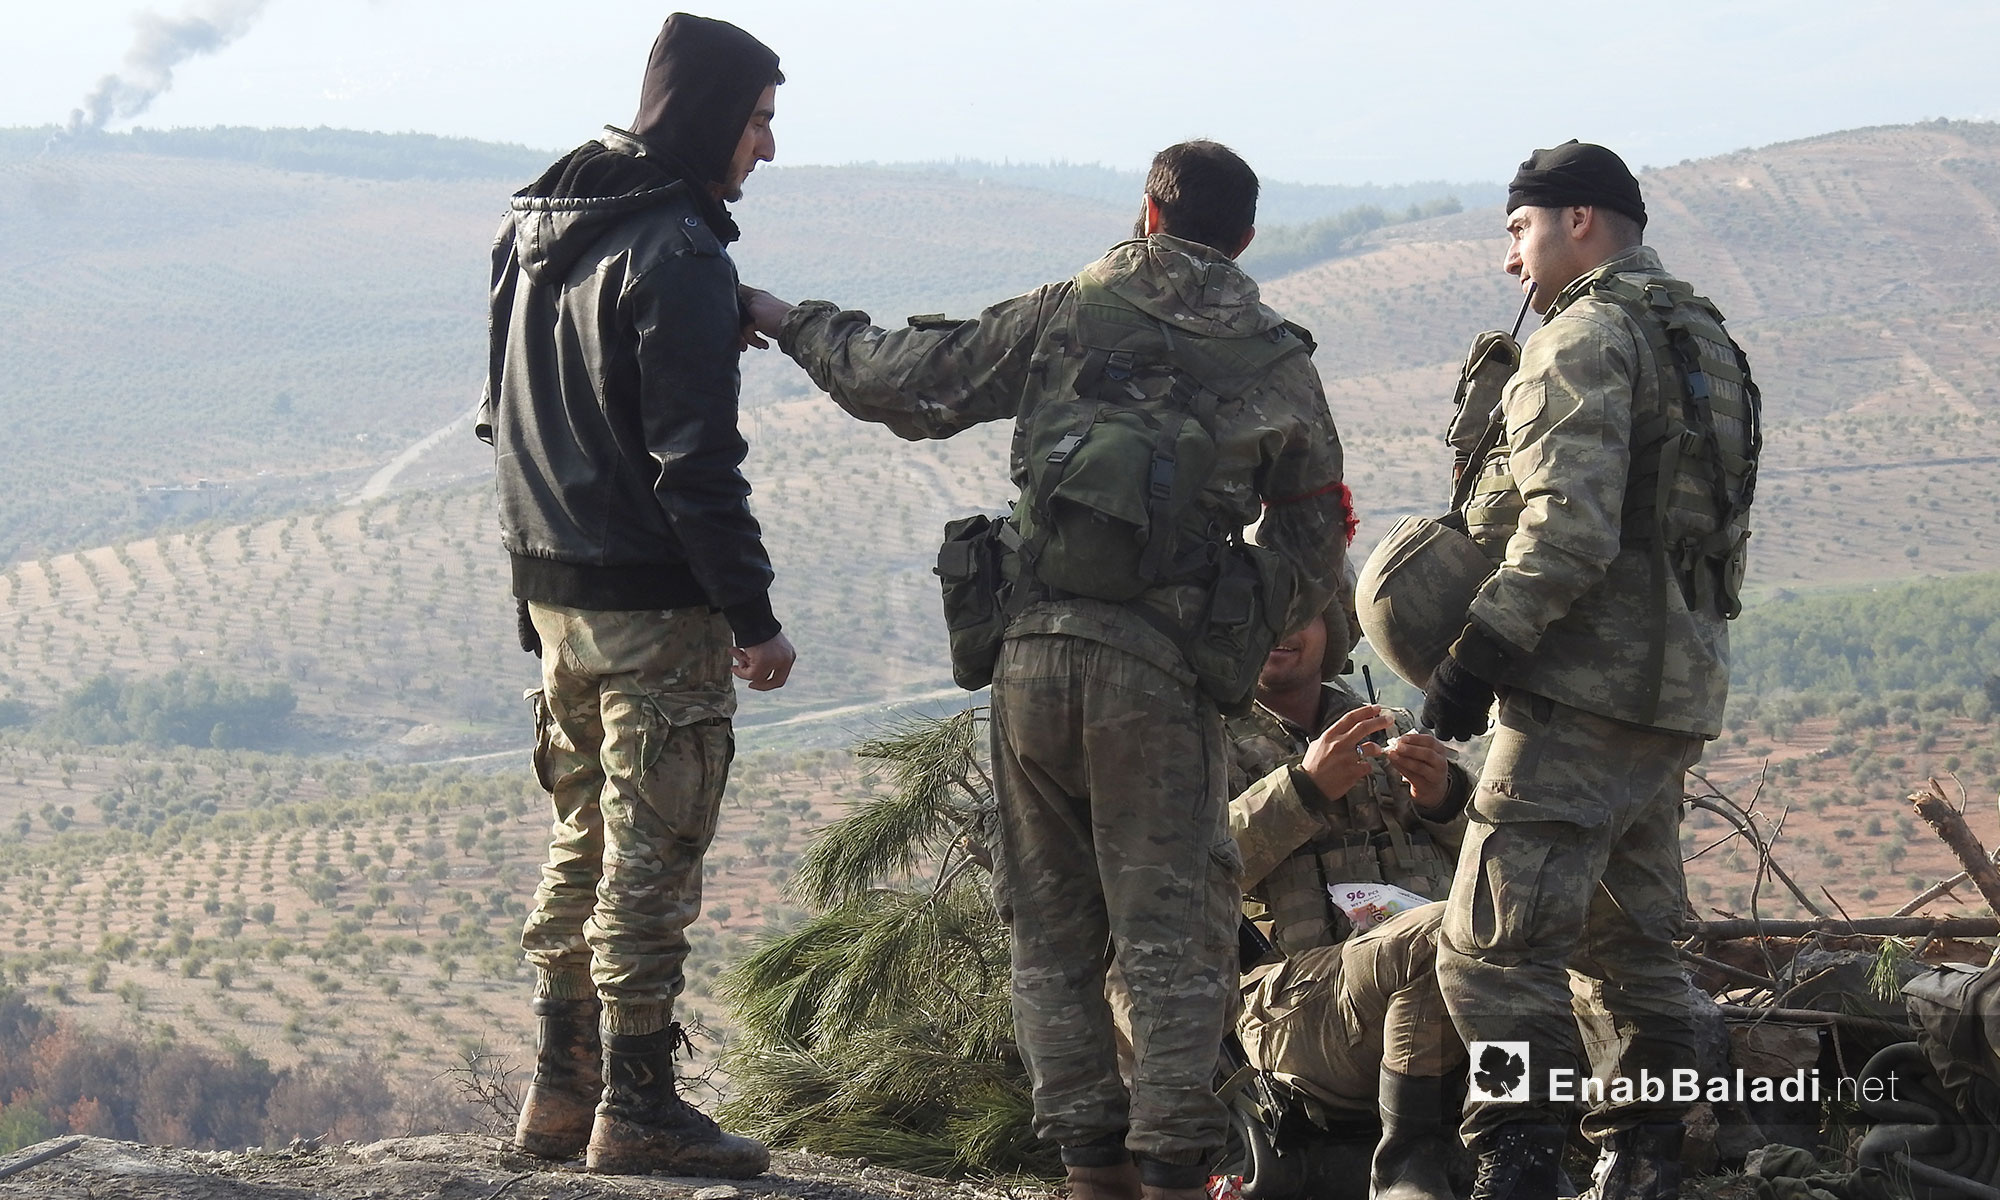 عناصر من الجيش الحر في معركة "غصن الزيتون" في منطقة عفرين شمالي حلب - 1 شباط 2018 (عنب بلدي)